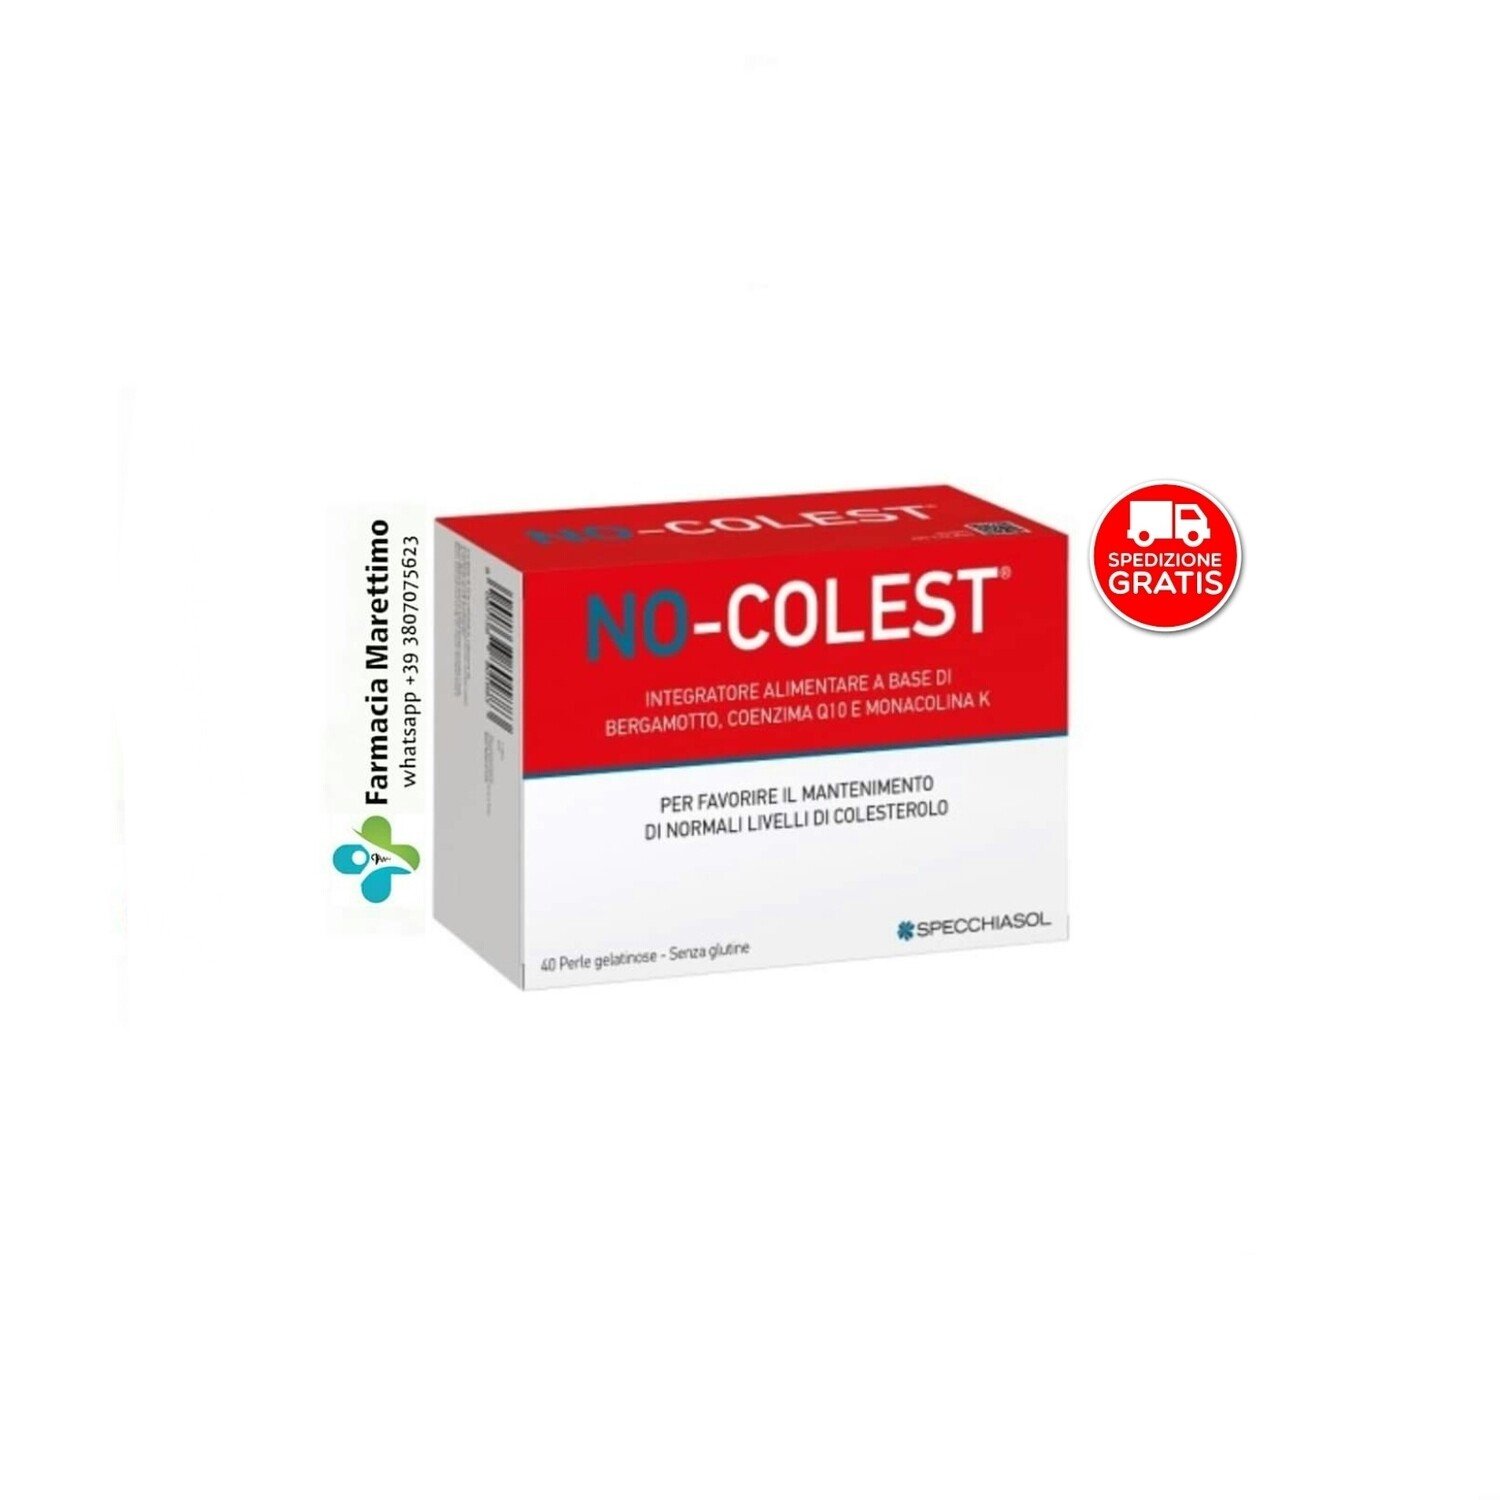 No-Colest per mantenere livelli di Colesterolo normali (40 Perle - Specchiasol)